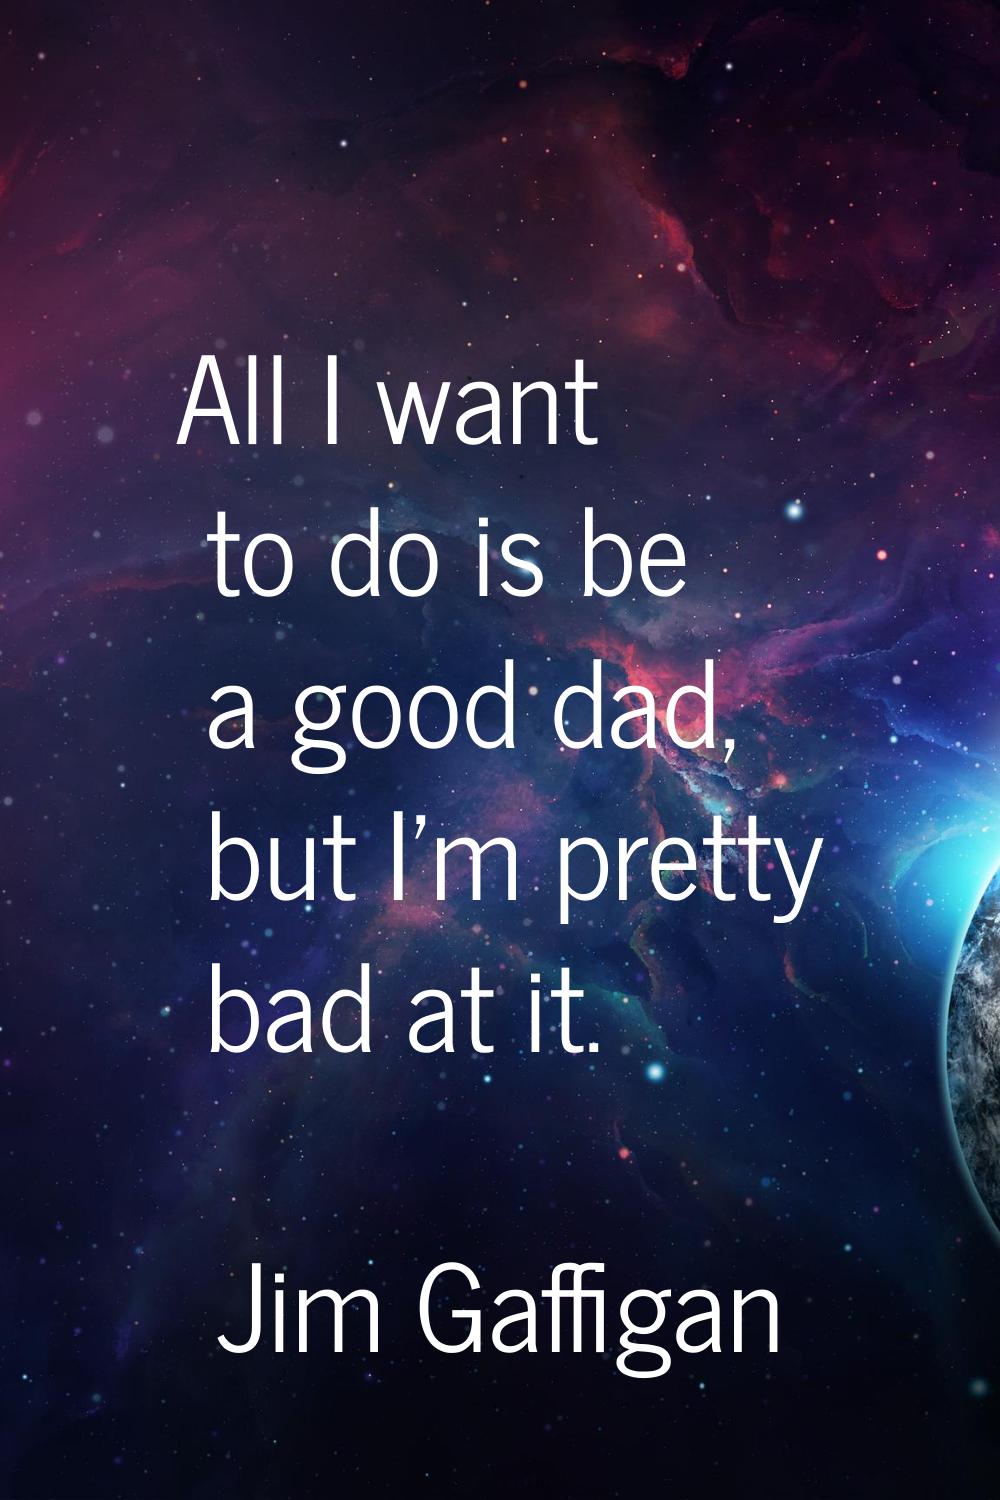 All I want to do is be a good dad, but I'm pretty bad at it.